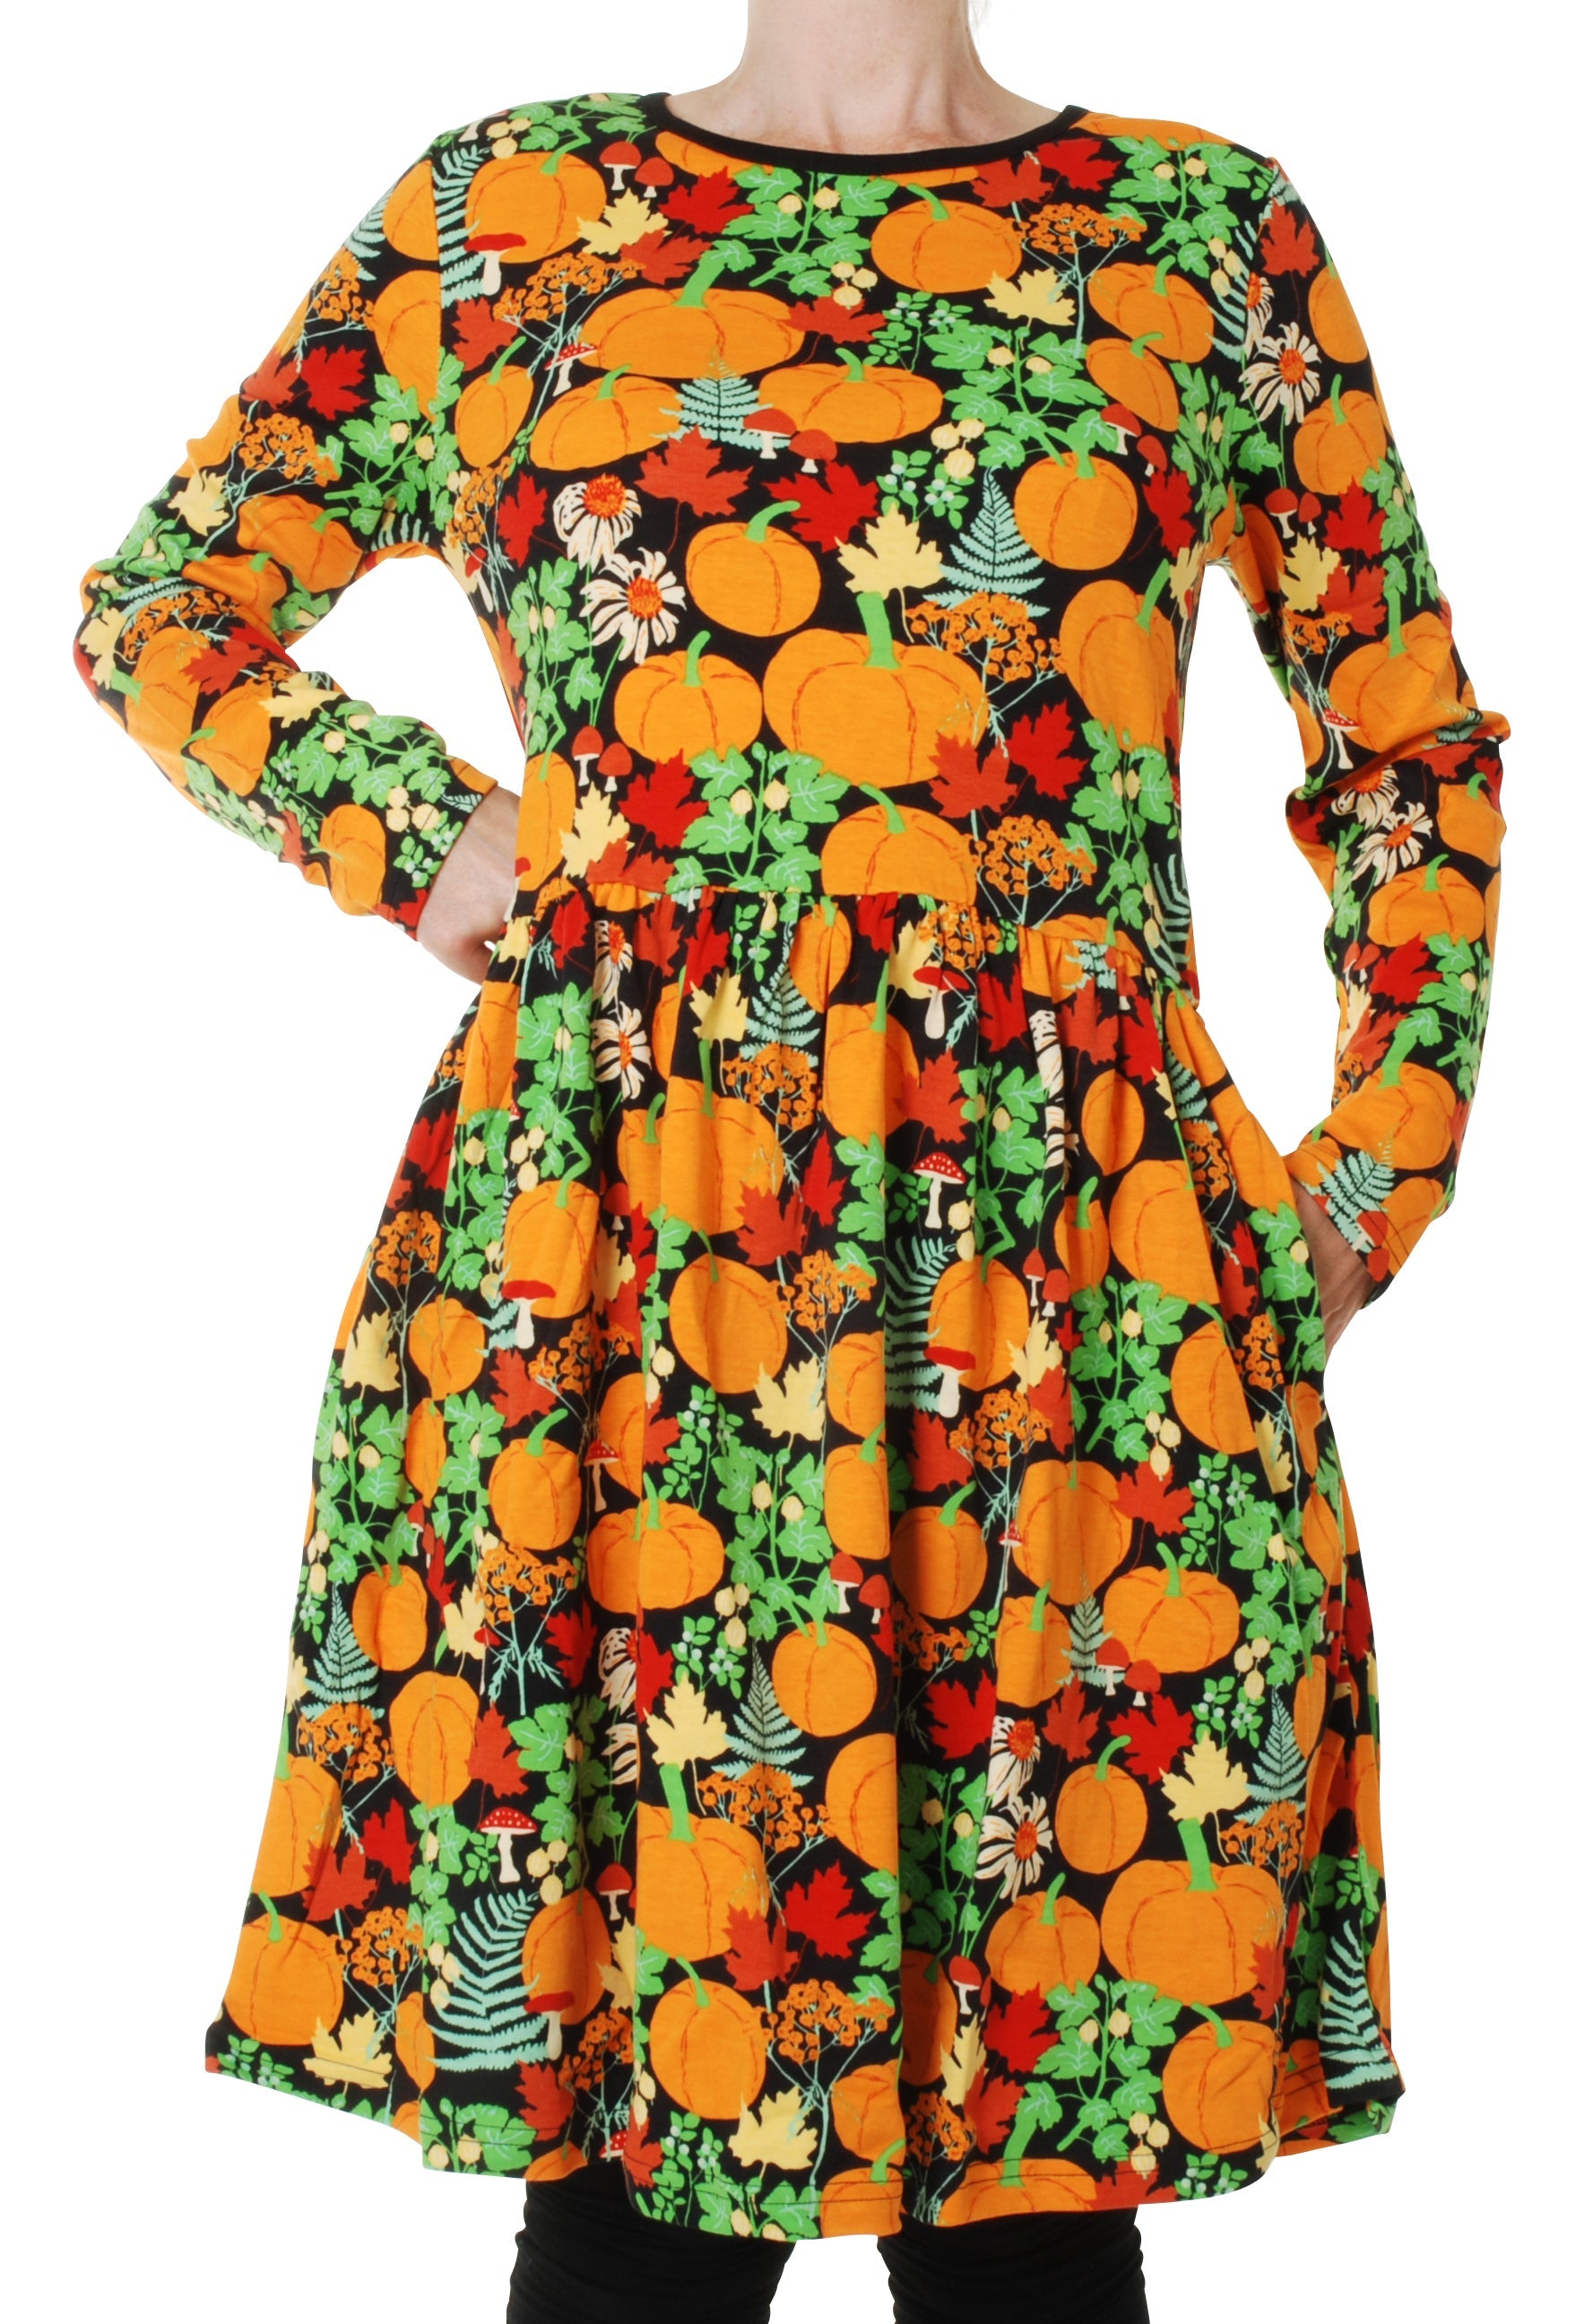 Adult Jurk / Long Sleeve Dress With Gathered Skirt Autumn Garden Black S-4XL - Duns Sweden